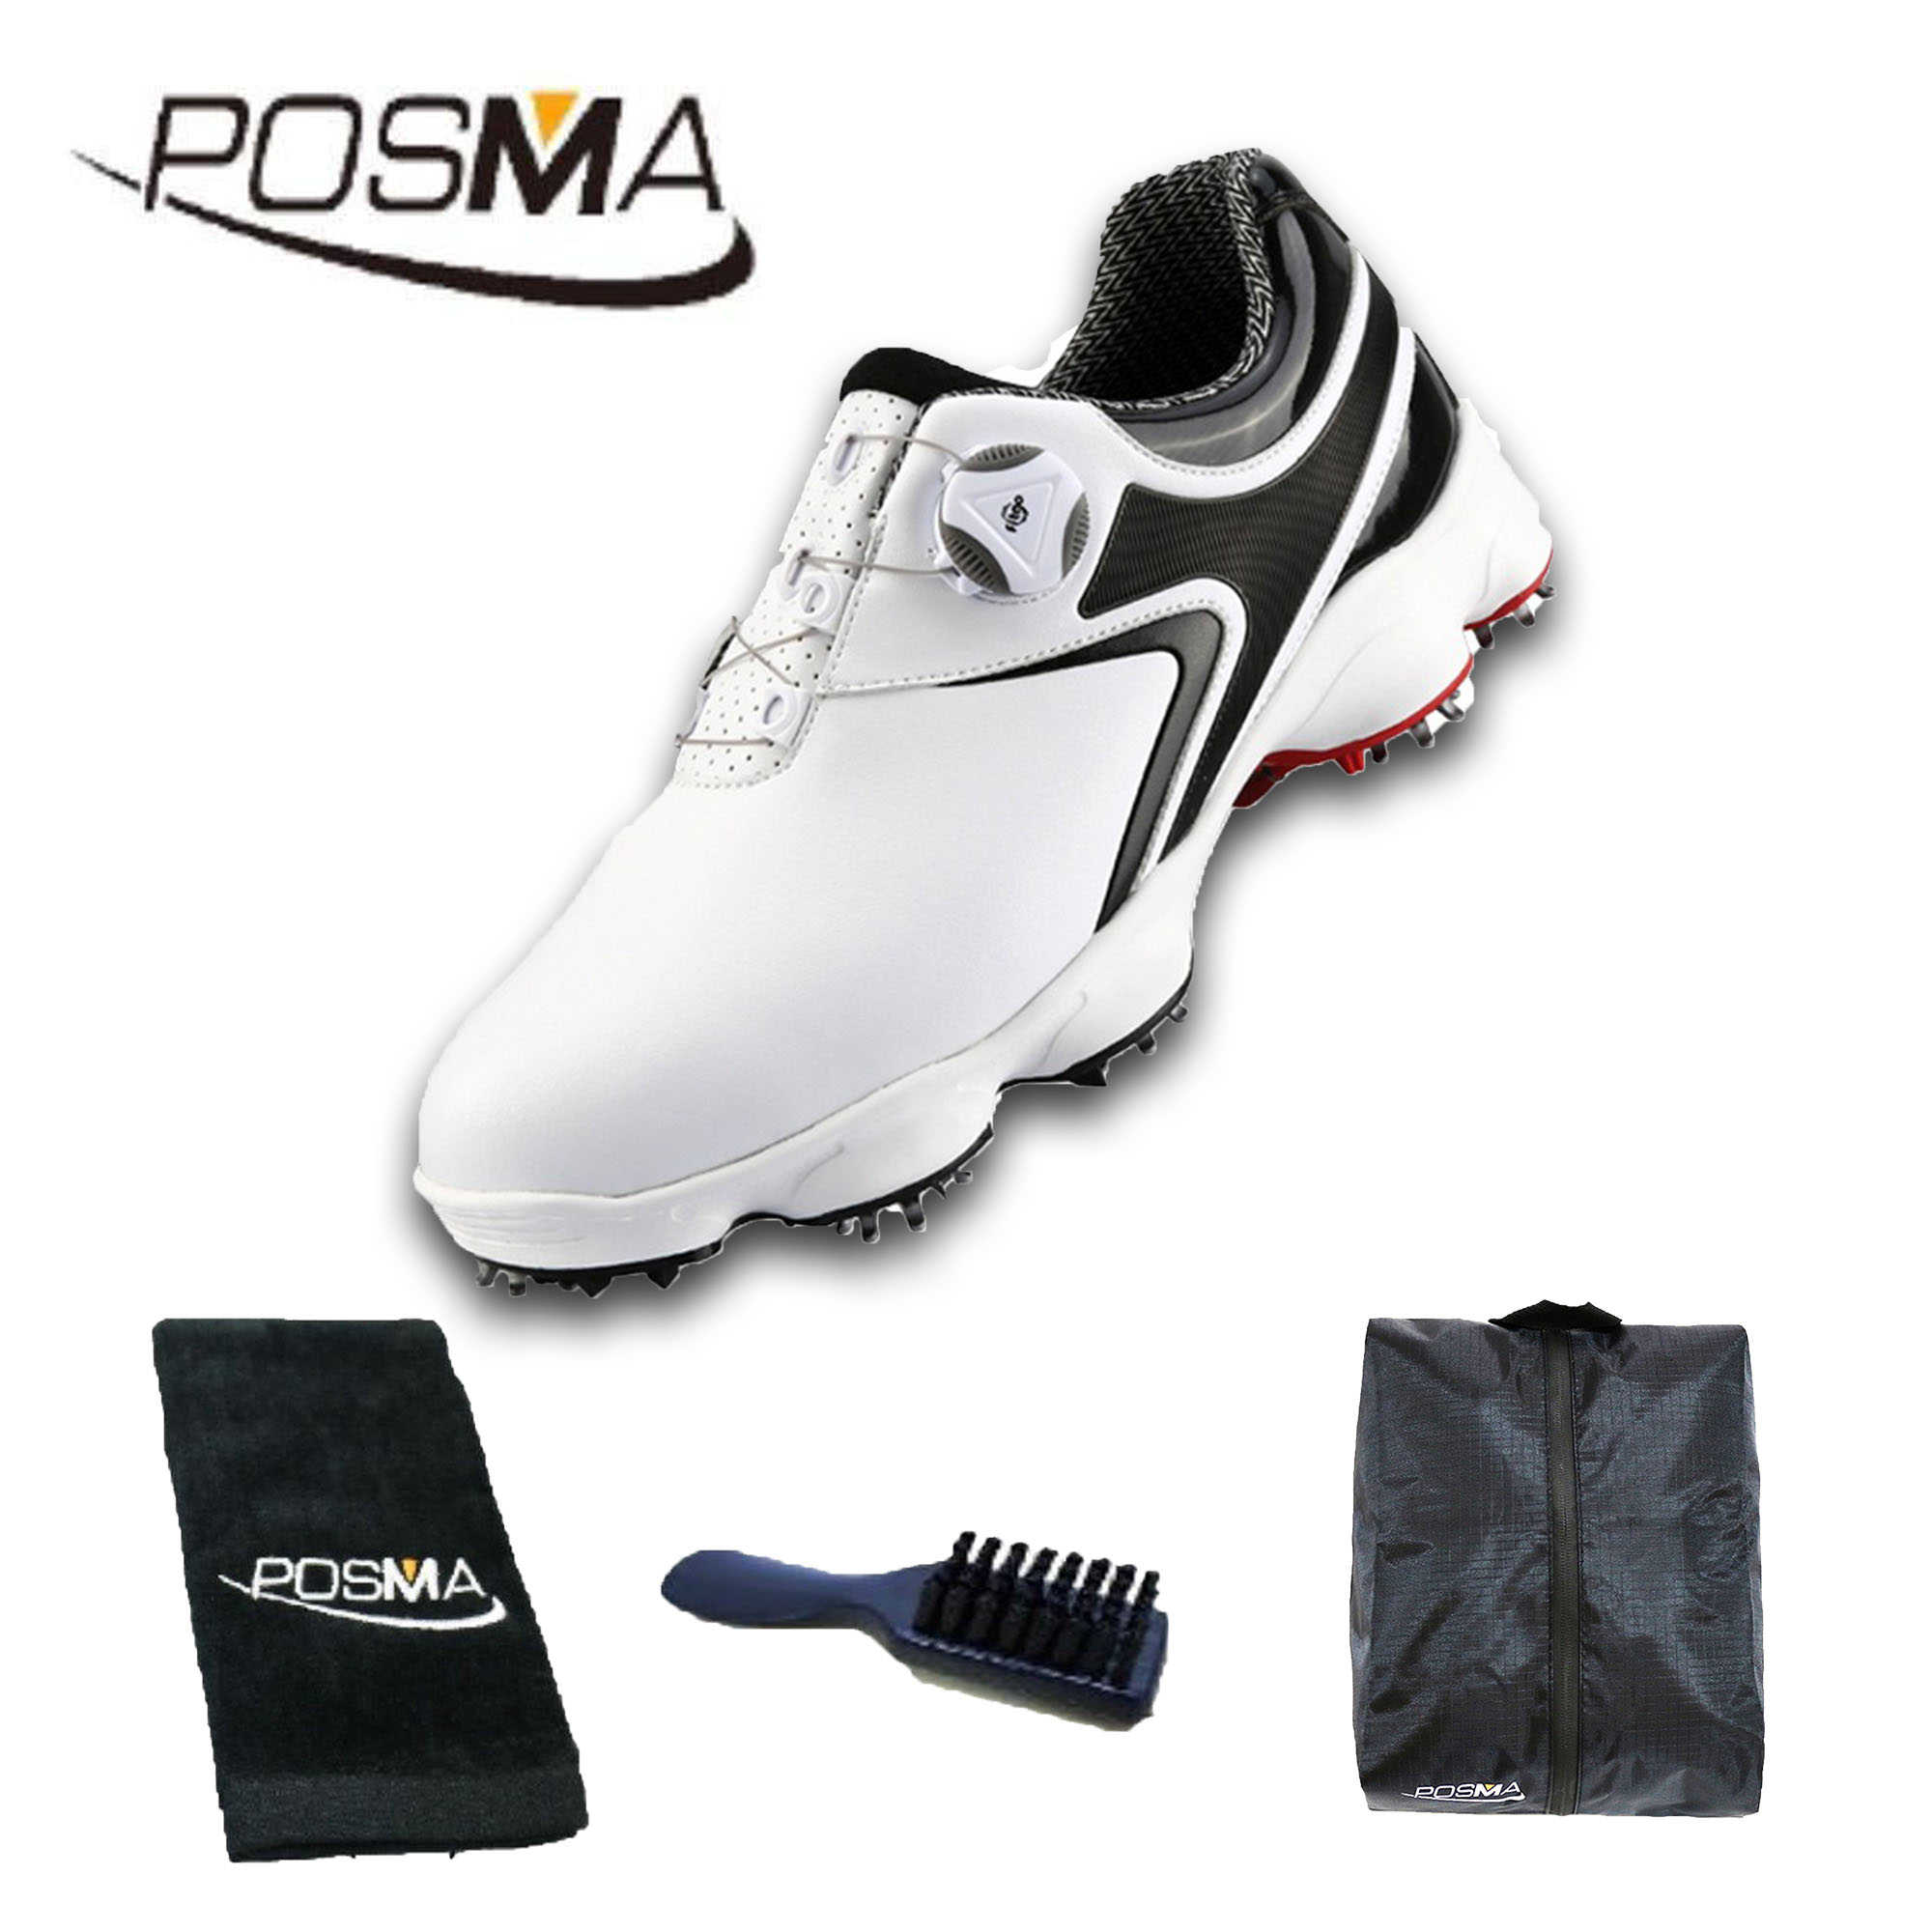 高爾夫男士球鞋 寬版鞋底 旋轉鞋帶 防水透氣  GSH125 白 黑 灰  配POSMA鞋包 2合1清潔刷 高爾夫球毛巾